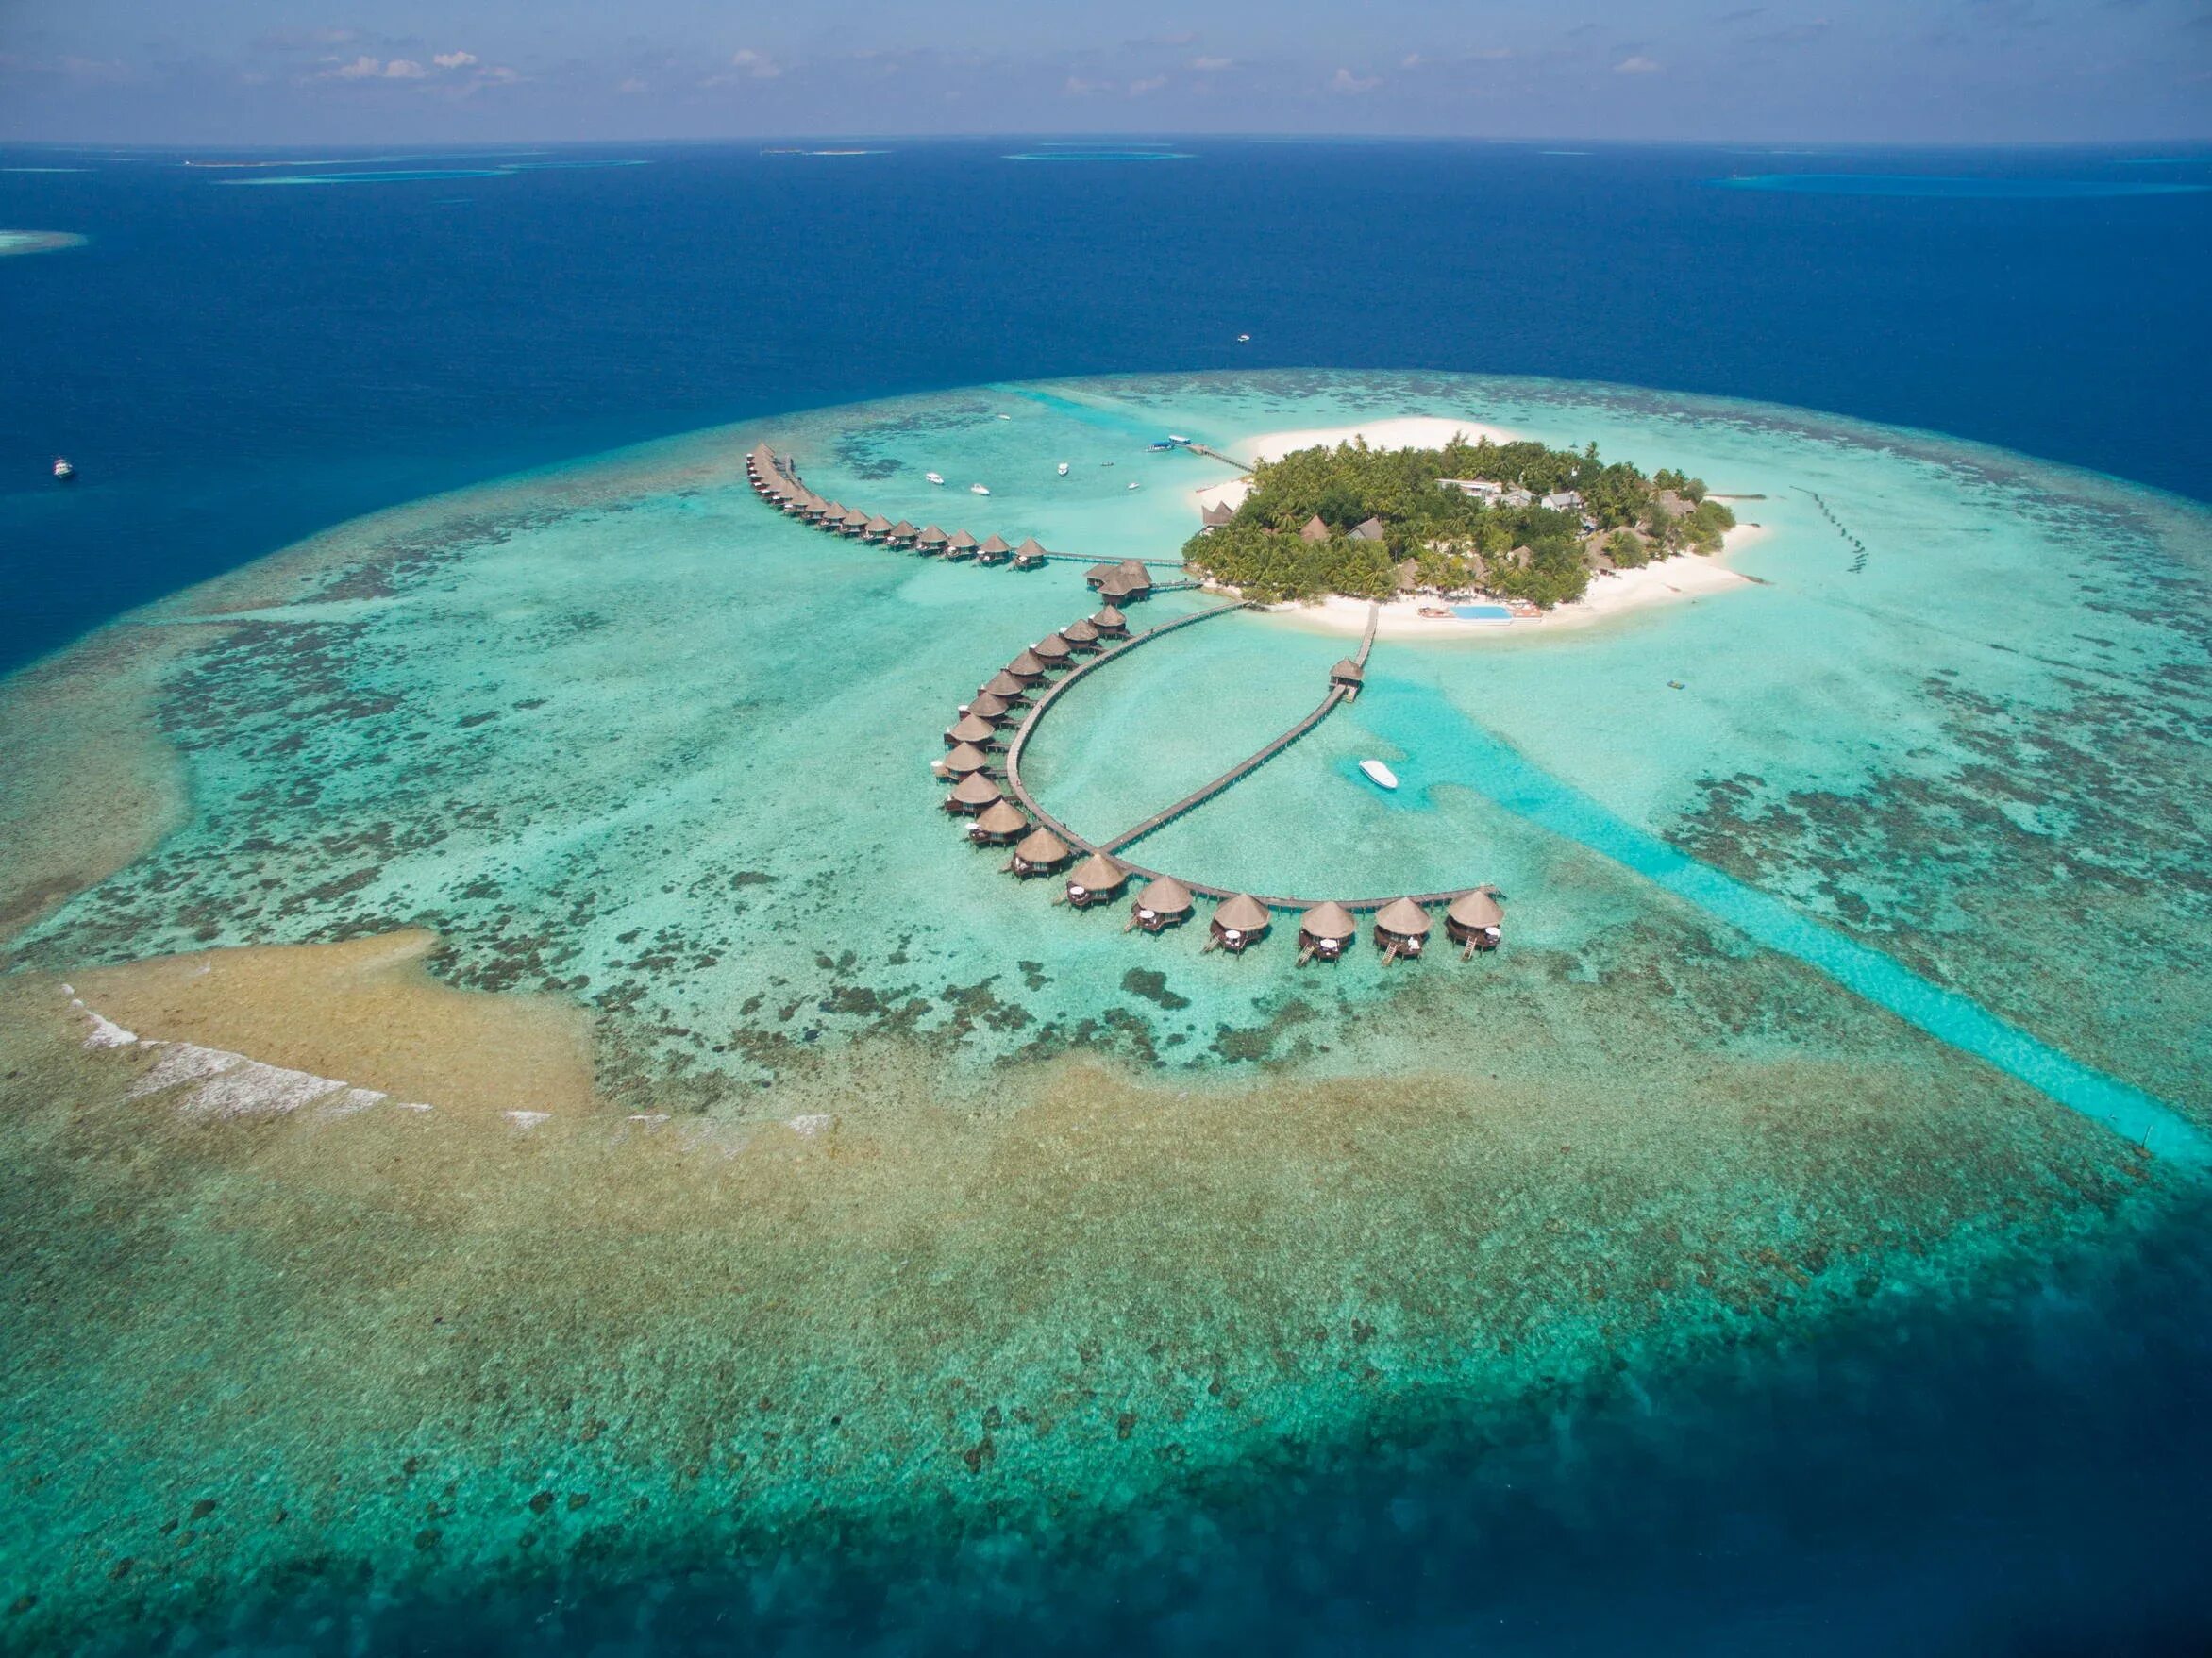 Thulhagiri island. Каафу Атолл Мальдивы. Тулагири Айленд Резорт Мальдивы. Северный Мале Атолл Мальдивы. Мальдивы Thulhagiri Island Resort 4 Мальдивы.